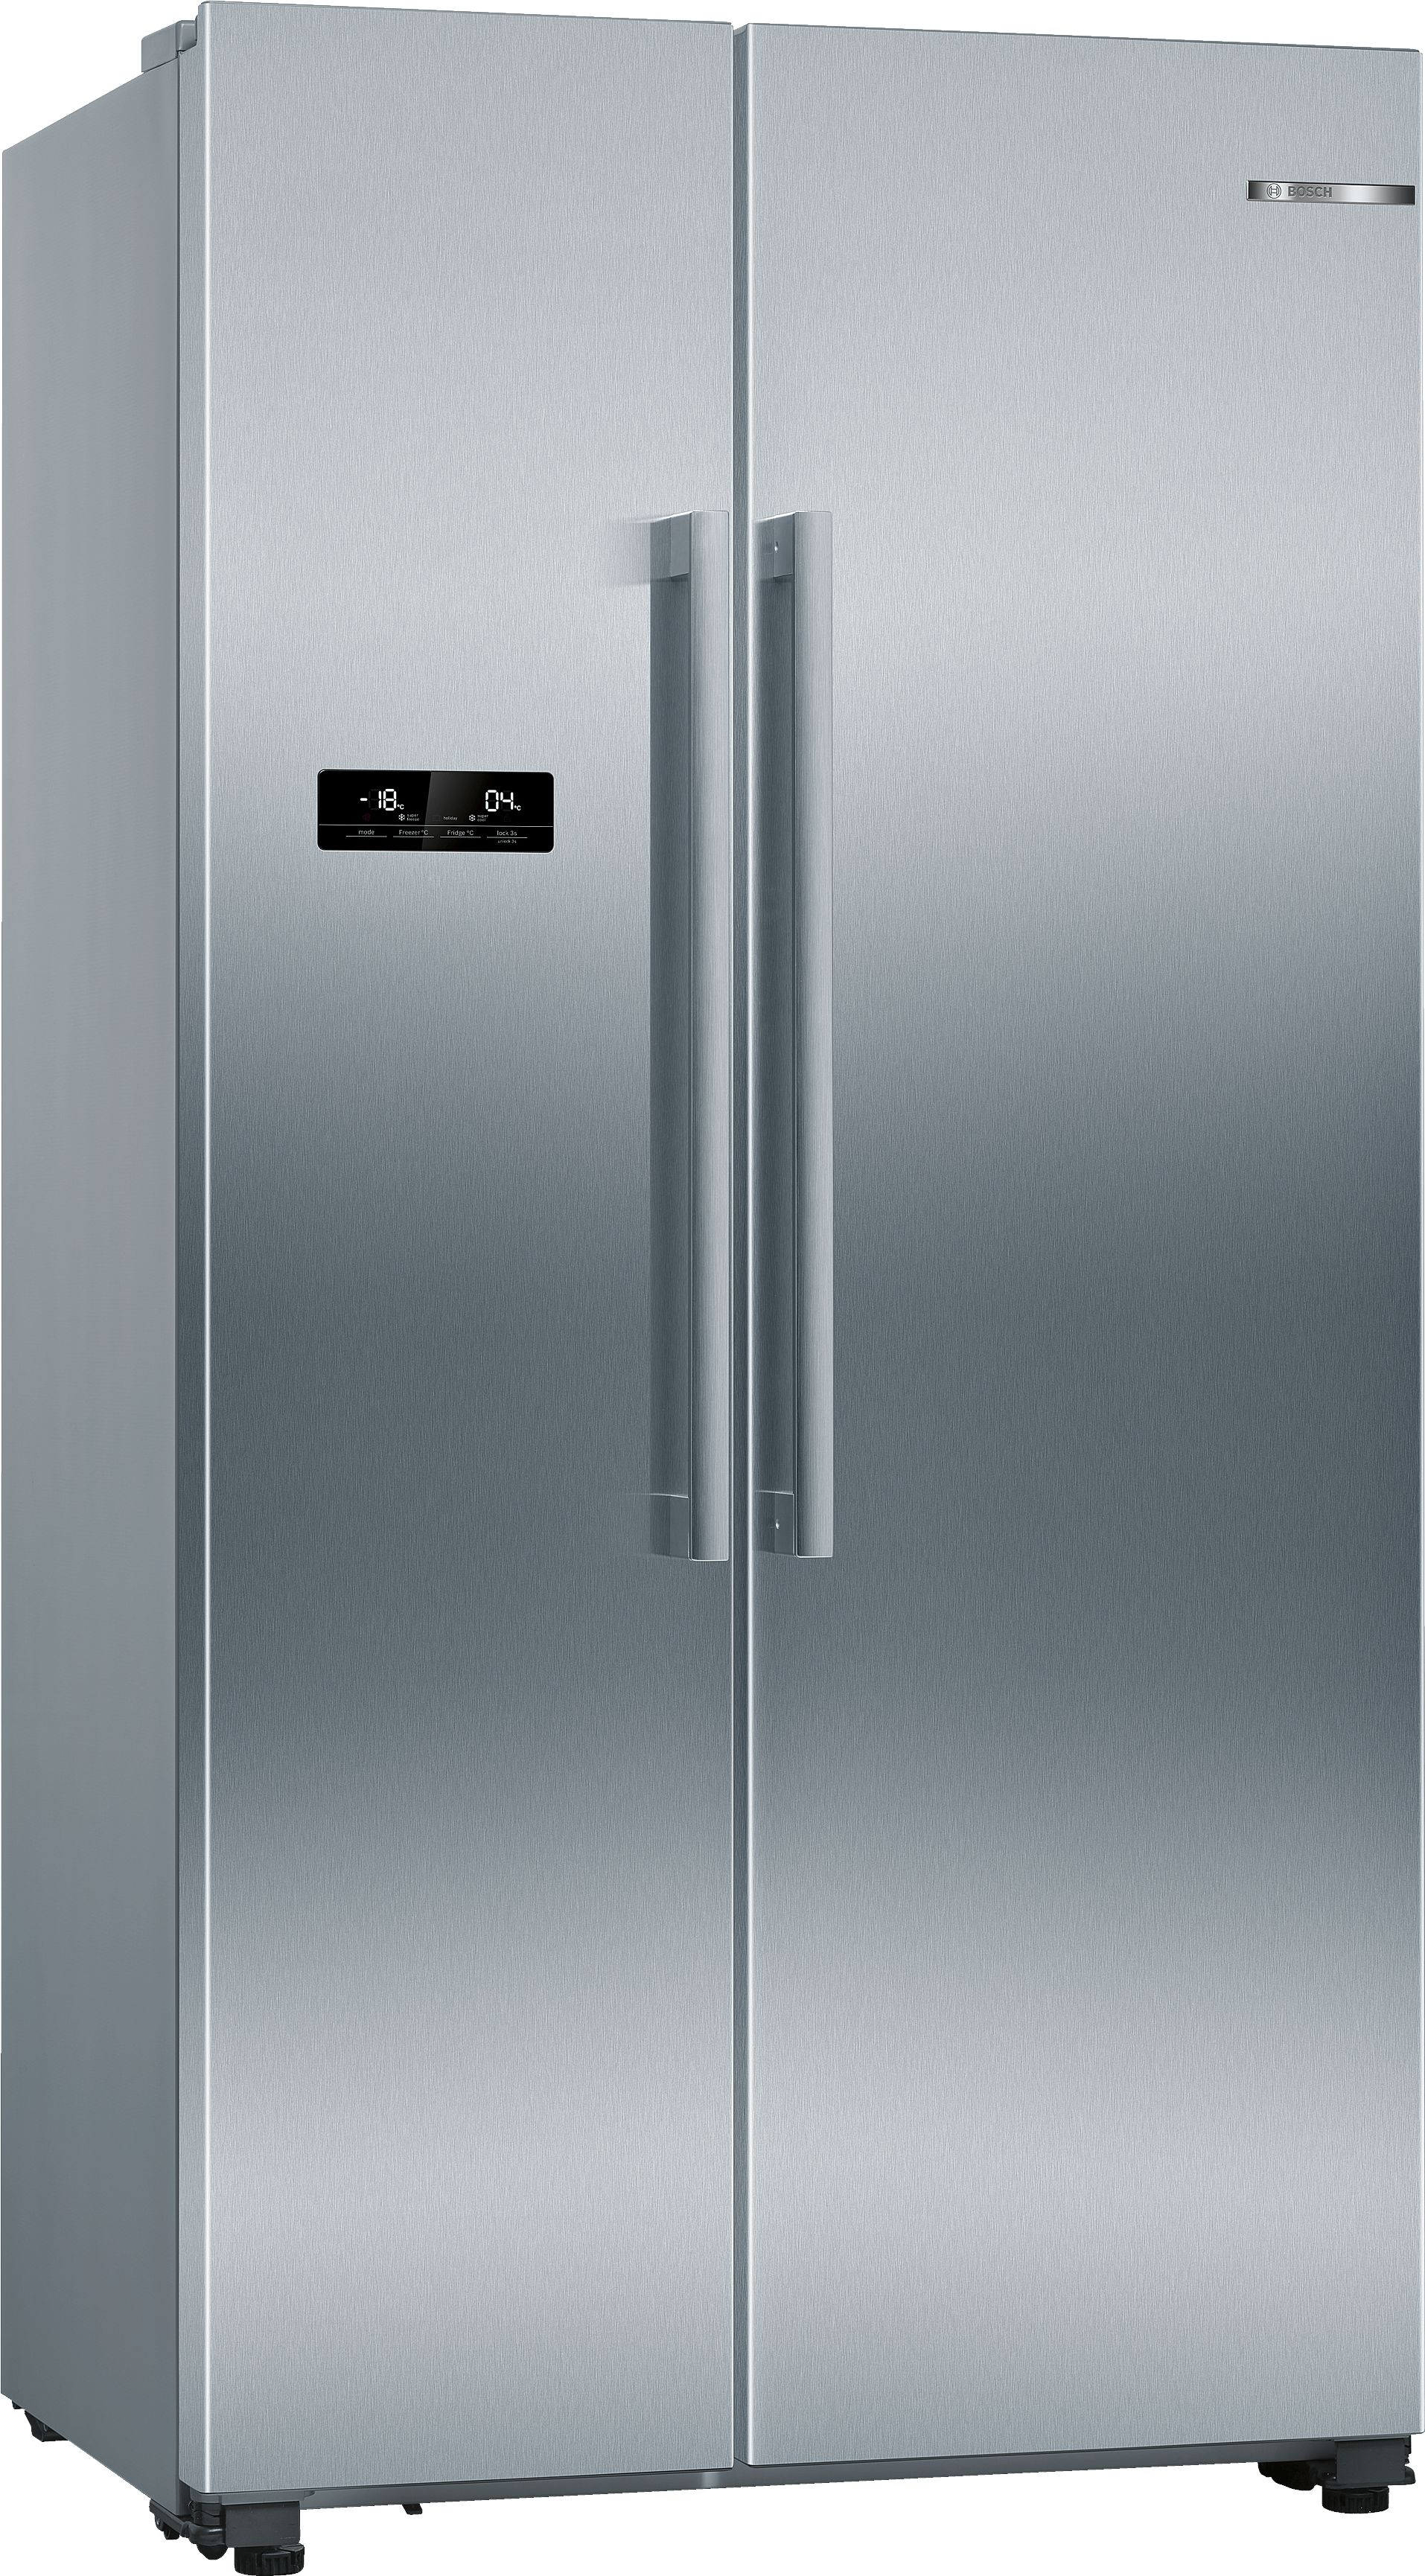 KAN93VIFPG BOSCH Non Dispenser- American Style Fridge-Freezer - F Energy - Stainless Steel